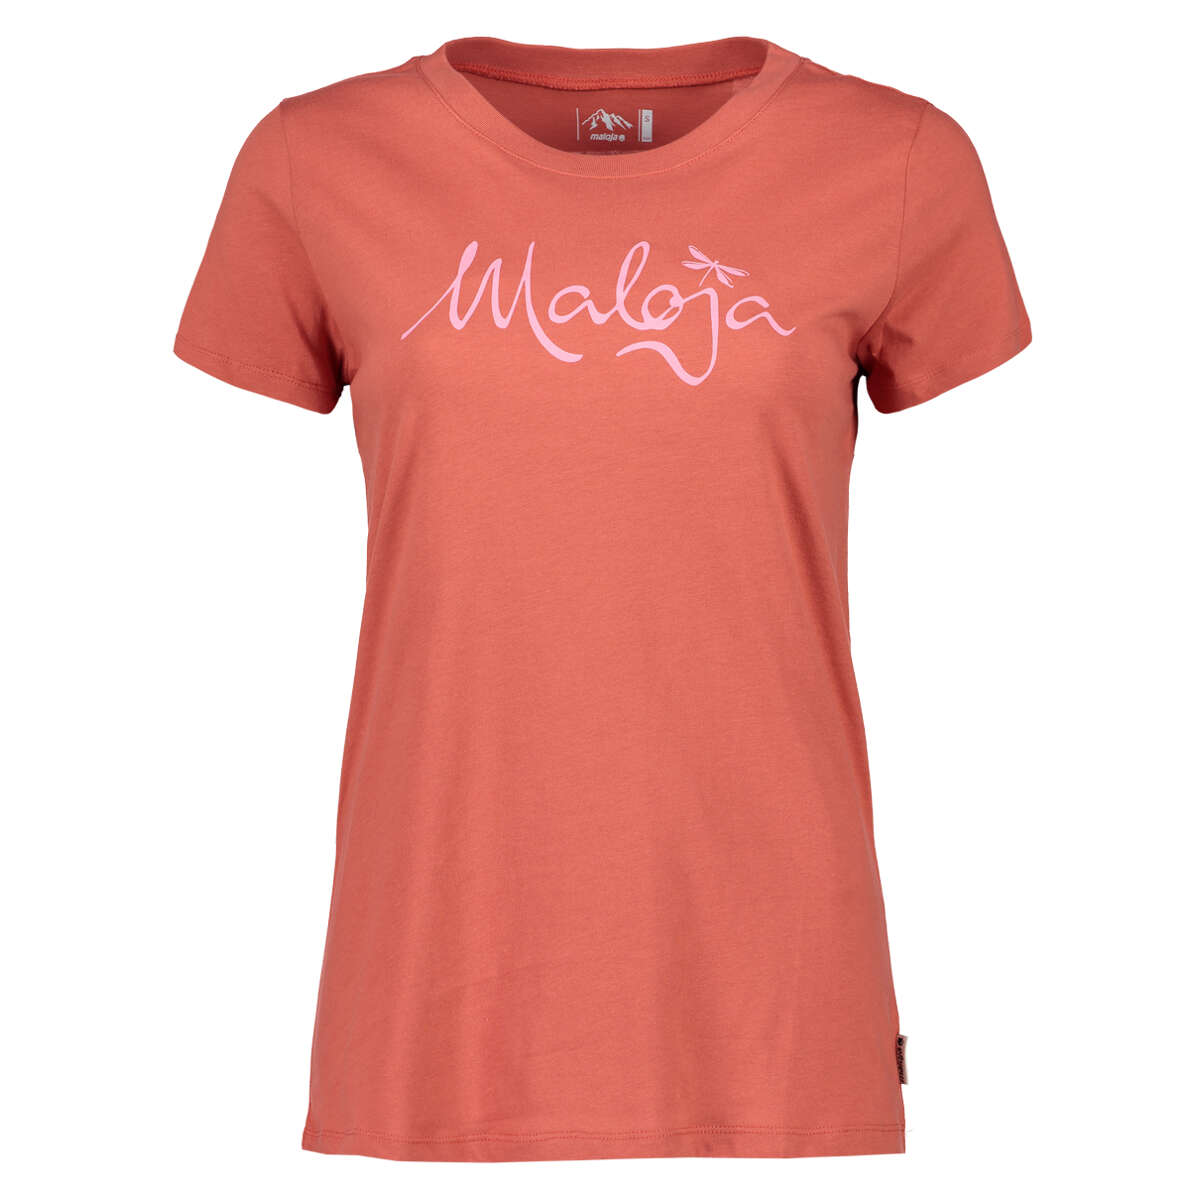 Maloja Girls T-Shirt SandraM. Maple Leaf